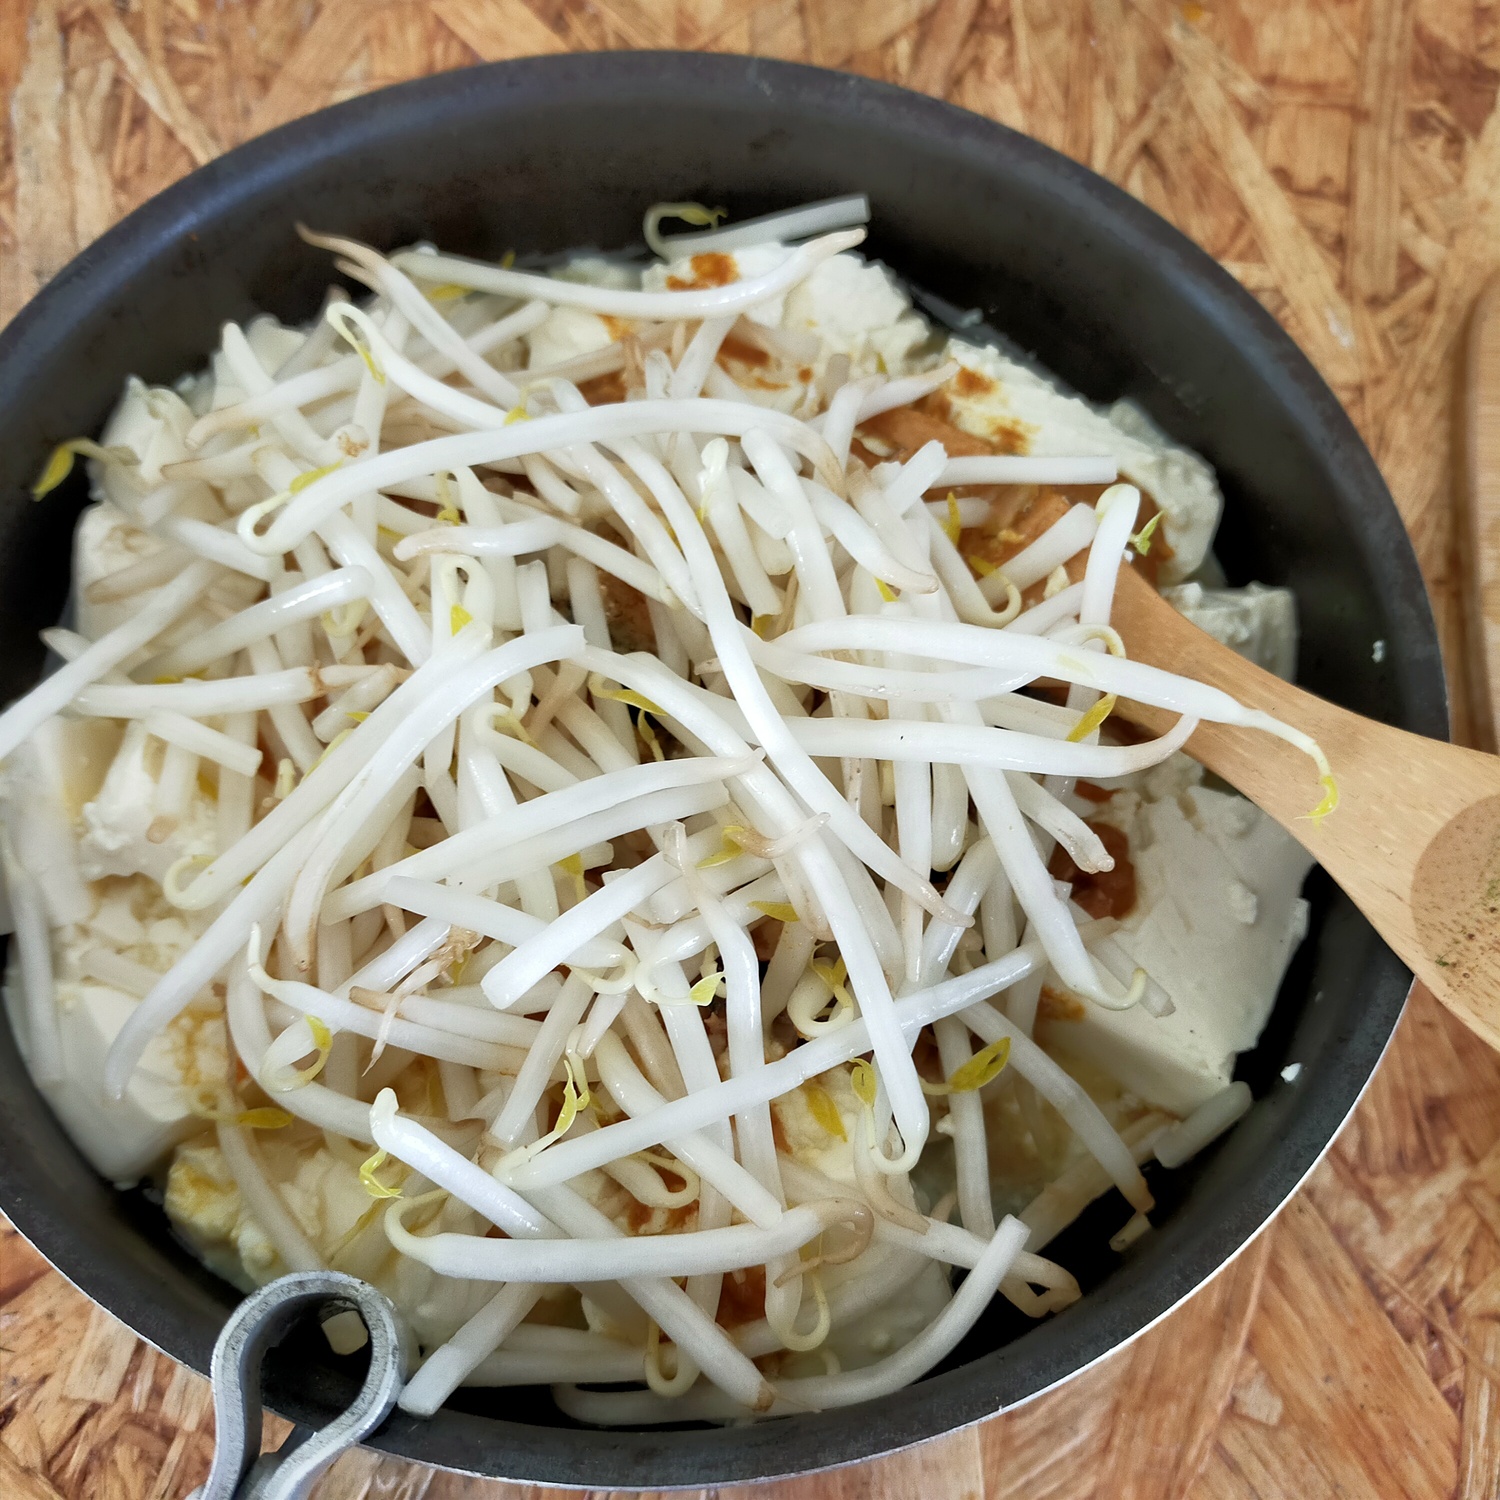 フライパンの中に豆腐があり、その上にもやしが盛られている。